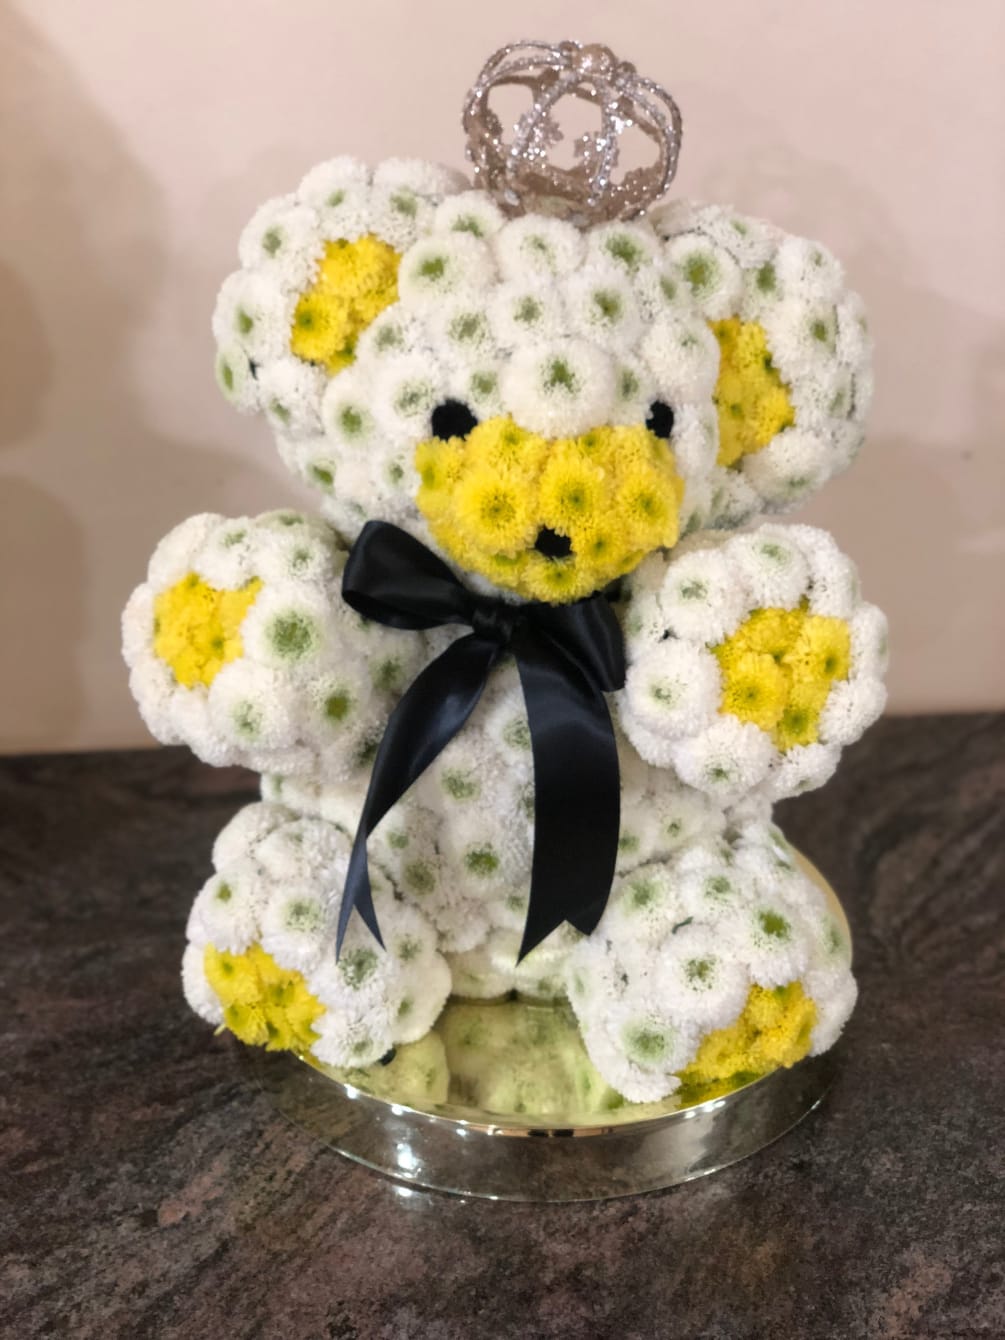 A teddy bear arrangement around 18&quot; made of button mums